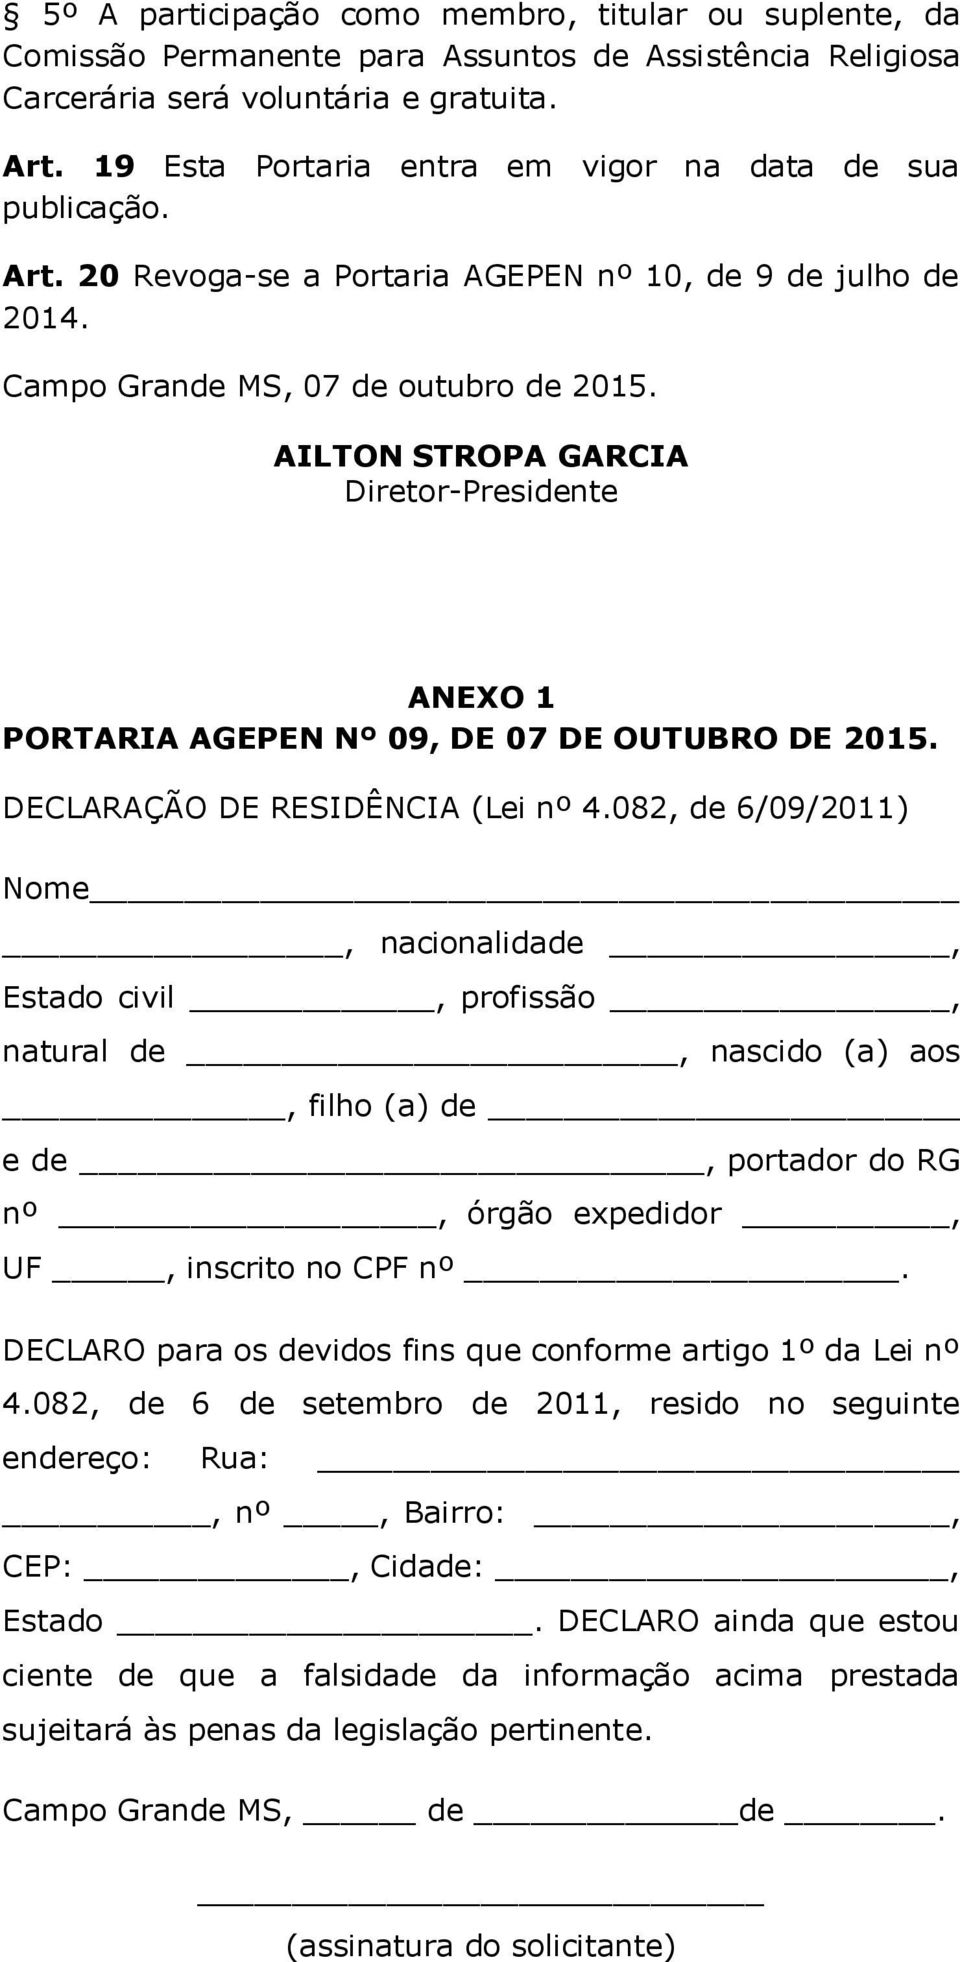 AILTON STROPA GARCIA Diretor-Presidente ANEXO 1 PORTARIA AGEPEN Nº 09, DE 07 DE OUTUBRO DE 2015. DECLARAÇÃO DE RESIDÊNCIA (Lei nº 4.